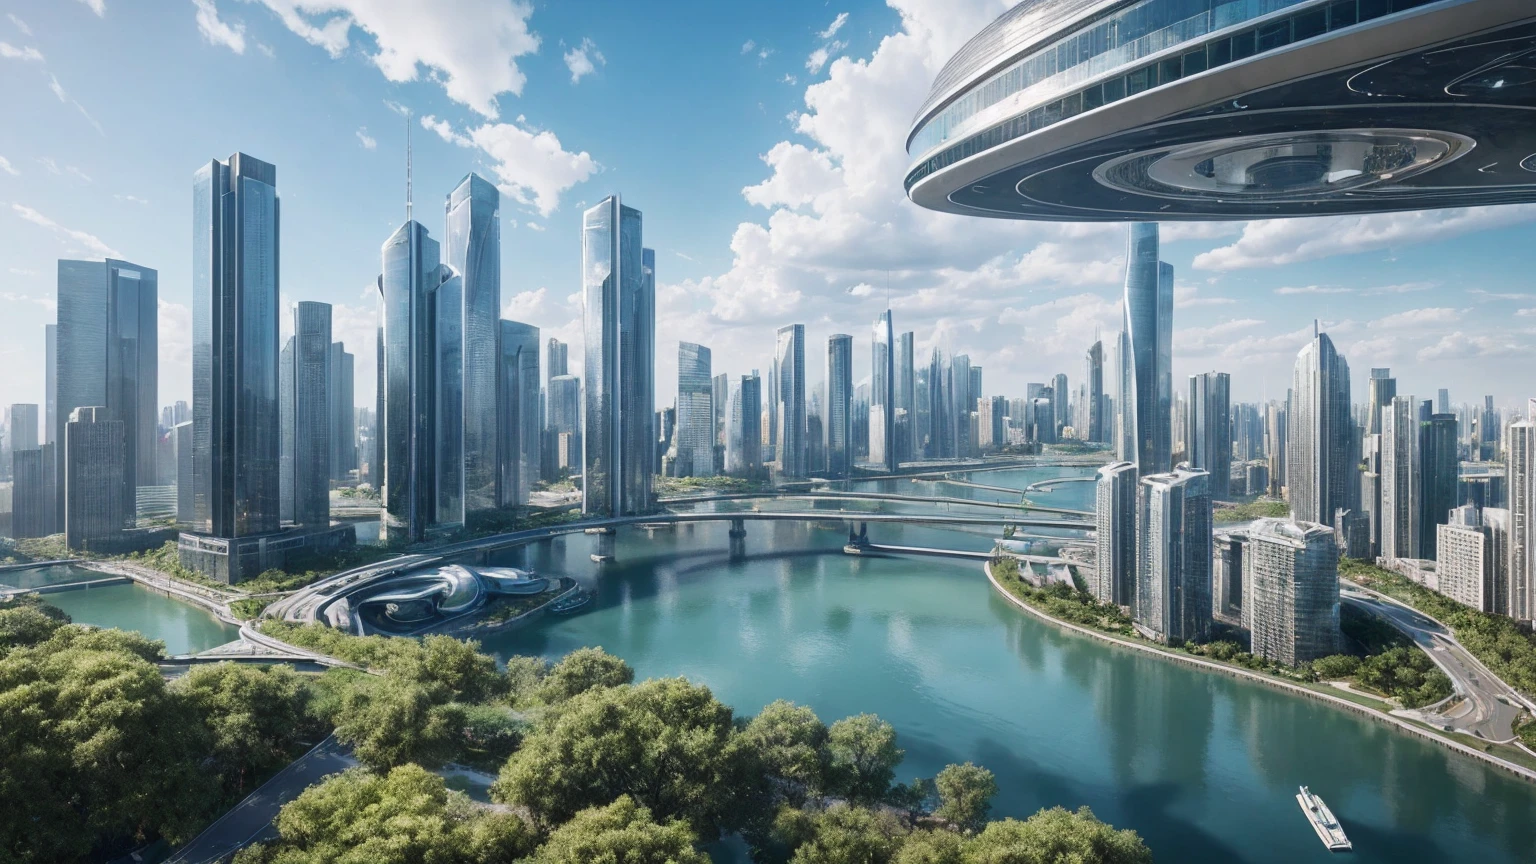 (最好的质量,4K,8千,高分辨率,杰作:1.2),极其详细,(实际的,真实感,照片般真实:1.37),未来派漂浮城市,未来科技,巨大的城市高科技平板平台,飞艇,漂浮在空中,未来城市,周围的小型飞艇,高科技半球形平台,彩灯,高级架构,现代建筑,摩天大楼,访问云,风景秀丽,俯瞰城市,令人印象深刻的设计,与自然完美融合,充满活力的氛围,未来交通系统,暂停停车,透明路径,郁郁葱葱的绿色植物,空中花园,瀑布,壮丽的天际线,水面上的倒影,波光粼粼的河流,建筑创新,未来派摩天大楼,透明穹顶,该建筑的形状很不寻常,高架行人道,令人印象深刻的天际线,发光灯,未来科技,简约设计,风景名胜区,全景,穿云塔,鲜艳的色彩,史诗般的日出,史诗般的日落,炫目的灯光显示,神奇的氛围,未来城市,城市乌托邦,奢华生活方式,创新能源,可持续发展,智慧城市技术,先进的基础设施,宁静的氛围,自然与科技和谐相处,令人惊叹的城市景观,前所未有的城市规划,建筑与自然无缝衔接,高科技大都市,尖端工程奇迹,城市生活的未来,富有远见的建筑理念,节能建筑,与环境和谐相处,漂浮在云层之上的城市,乌托邦梦想照进现实,可能性是无止境,先进的交通网络,绿能一体化,创新材料,令人印象深刻的全息显示,先进的通讯系统,令人惊叹的鸟瞰图,安静祥和的环境,现代主义美学,空灵之美